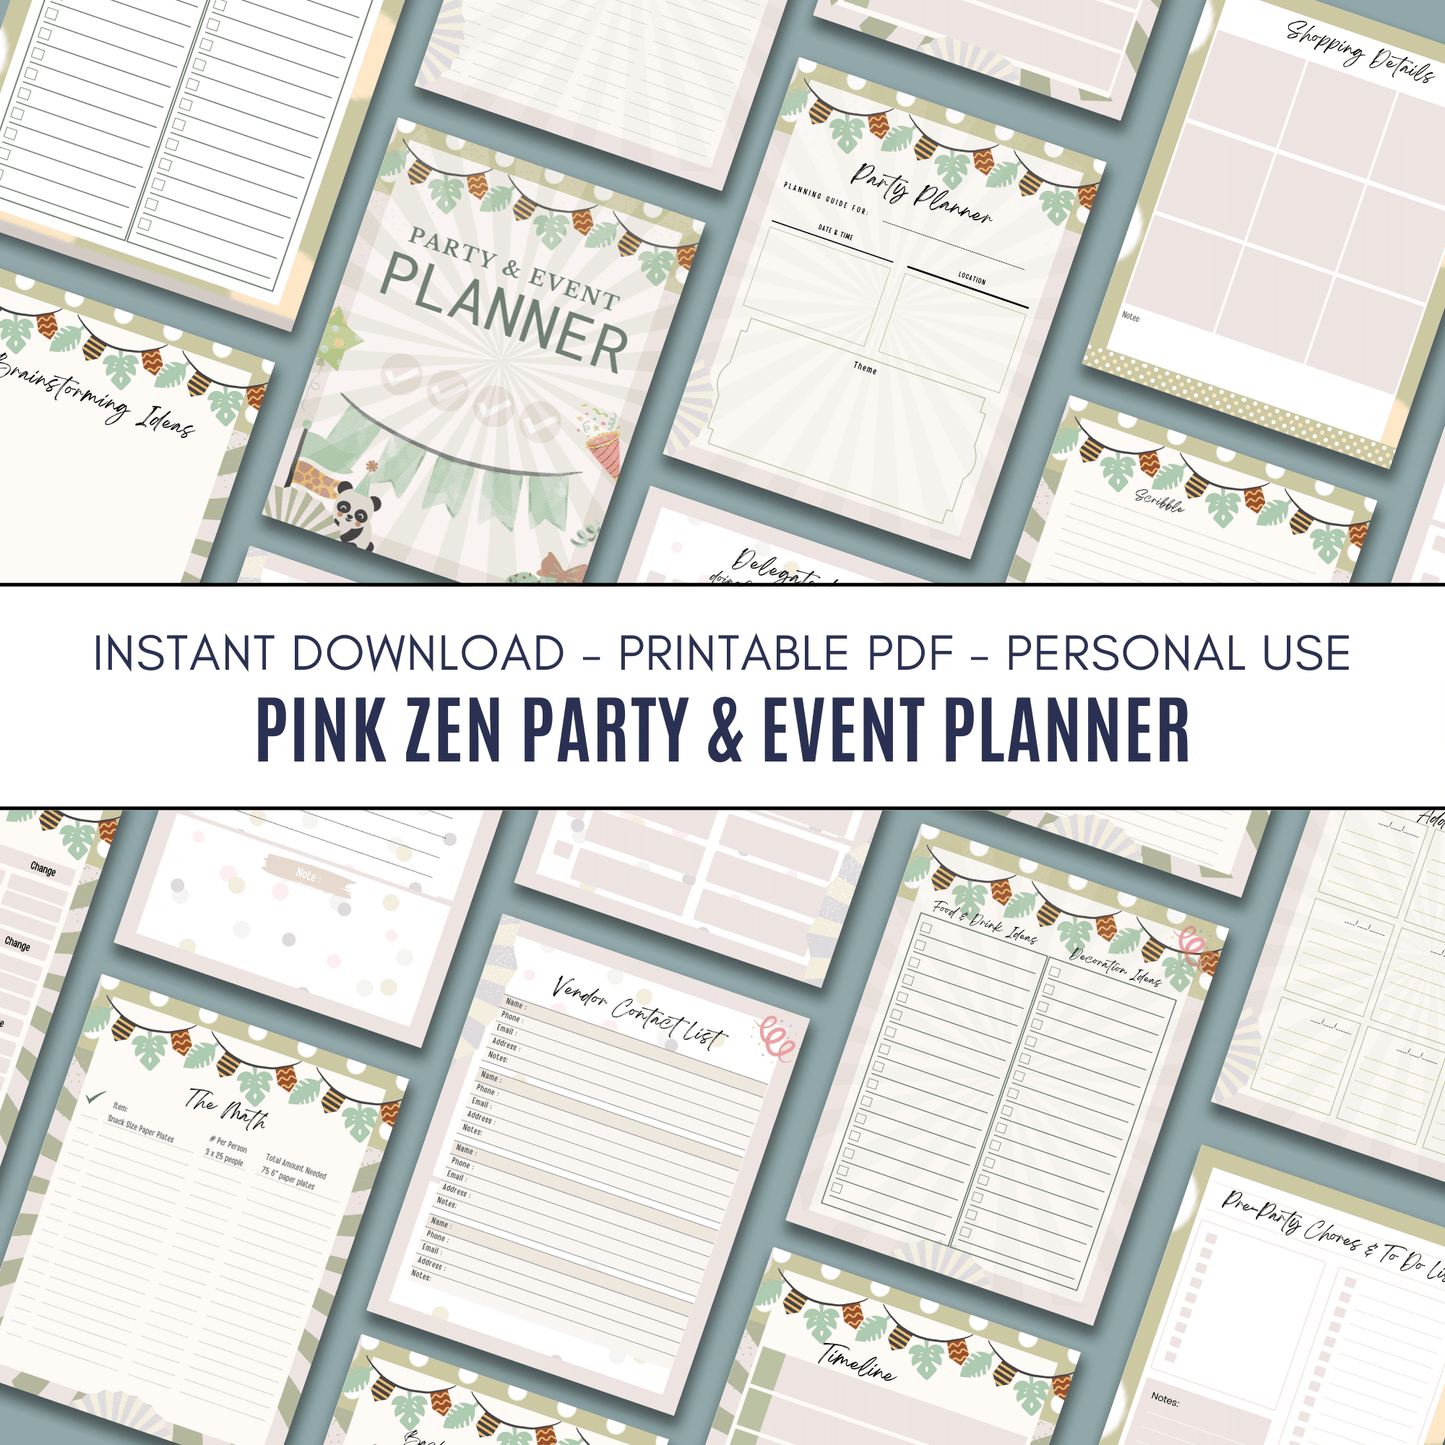 Pink Zen Party & Event Planner